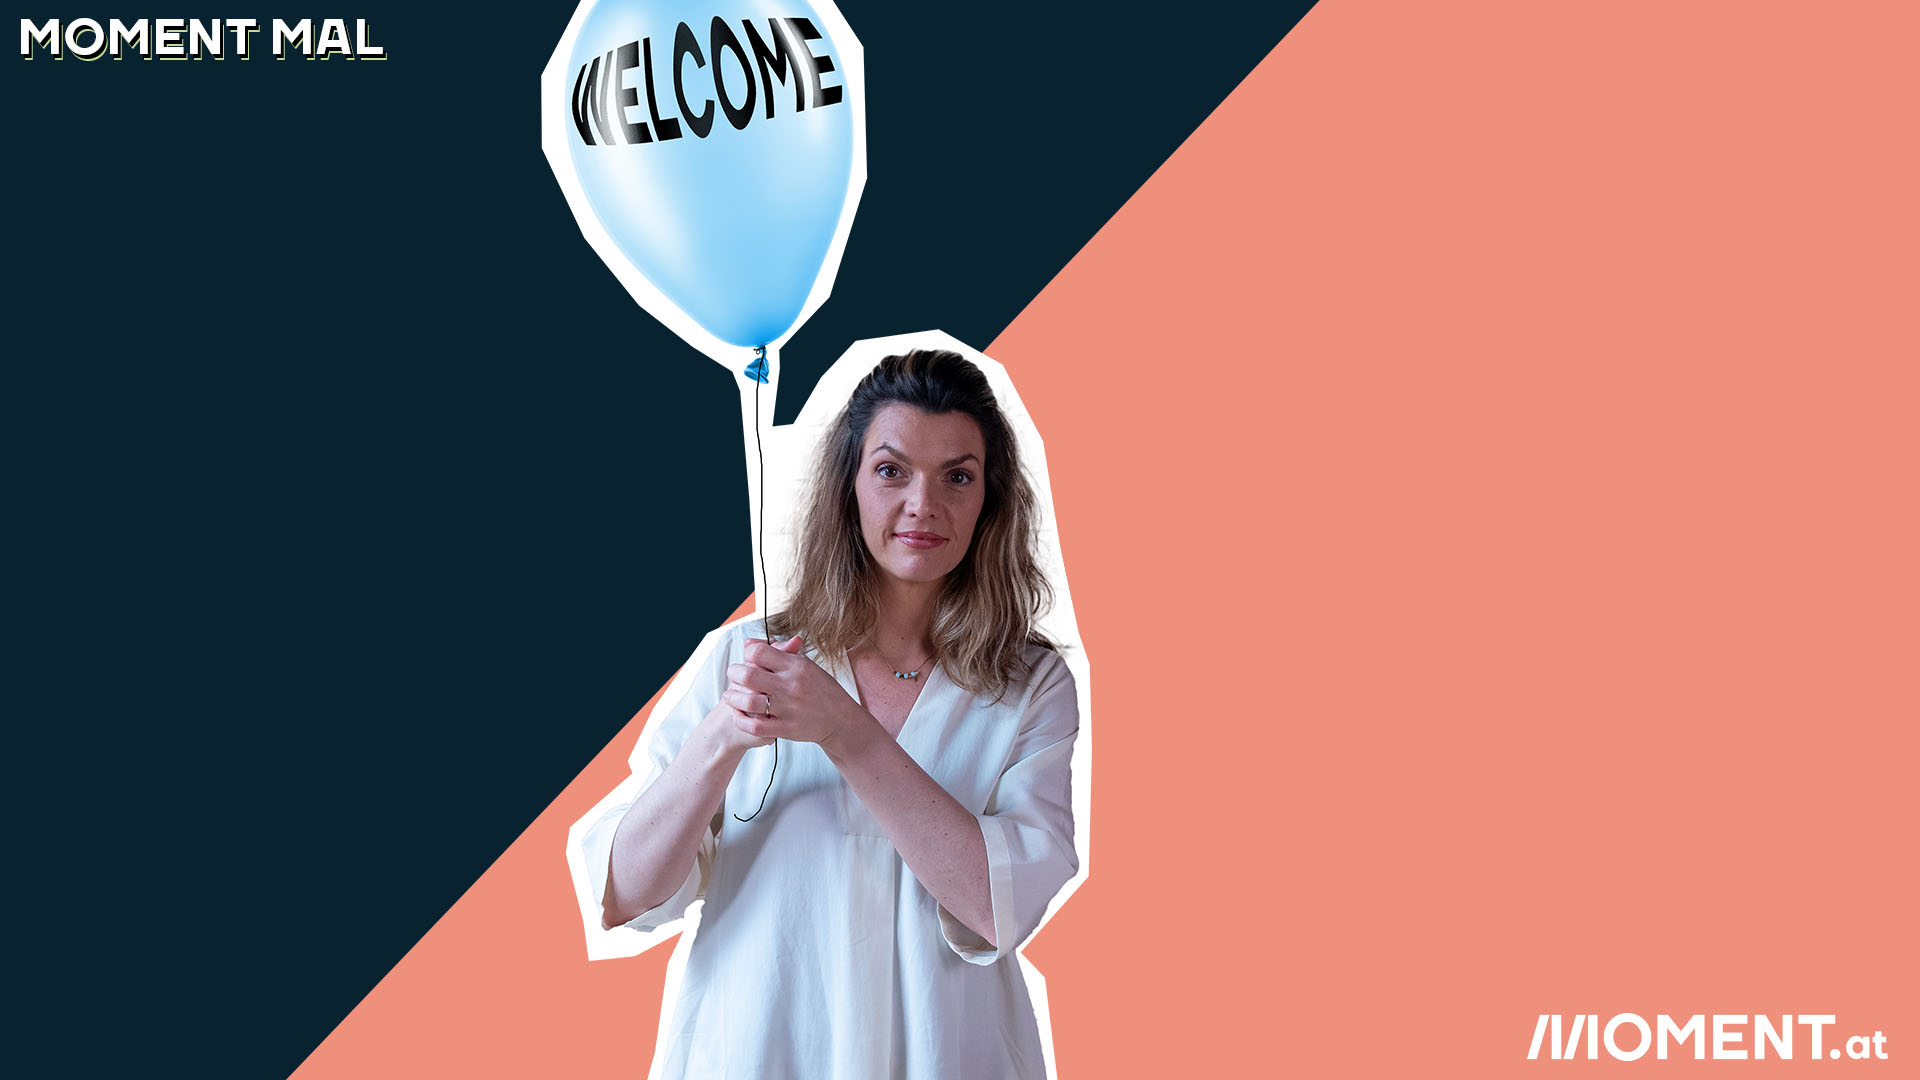 Barbara Blaha hält einen blauen Luftballon auf dem "Welcome" geschrieben steht